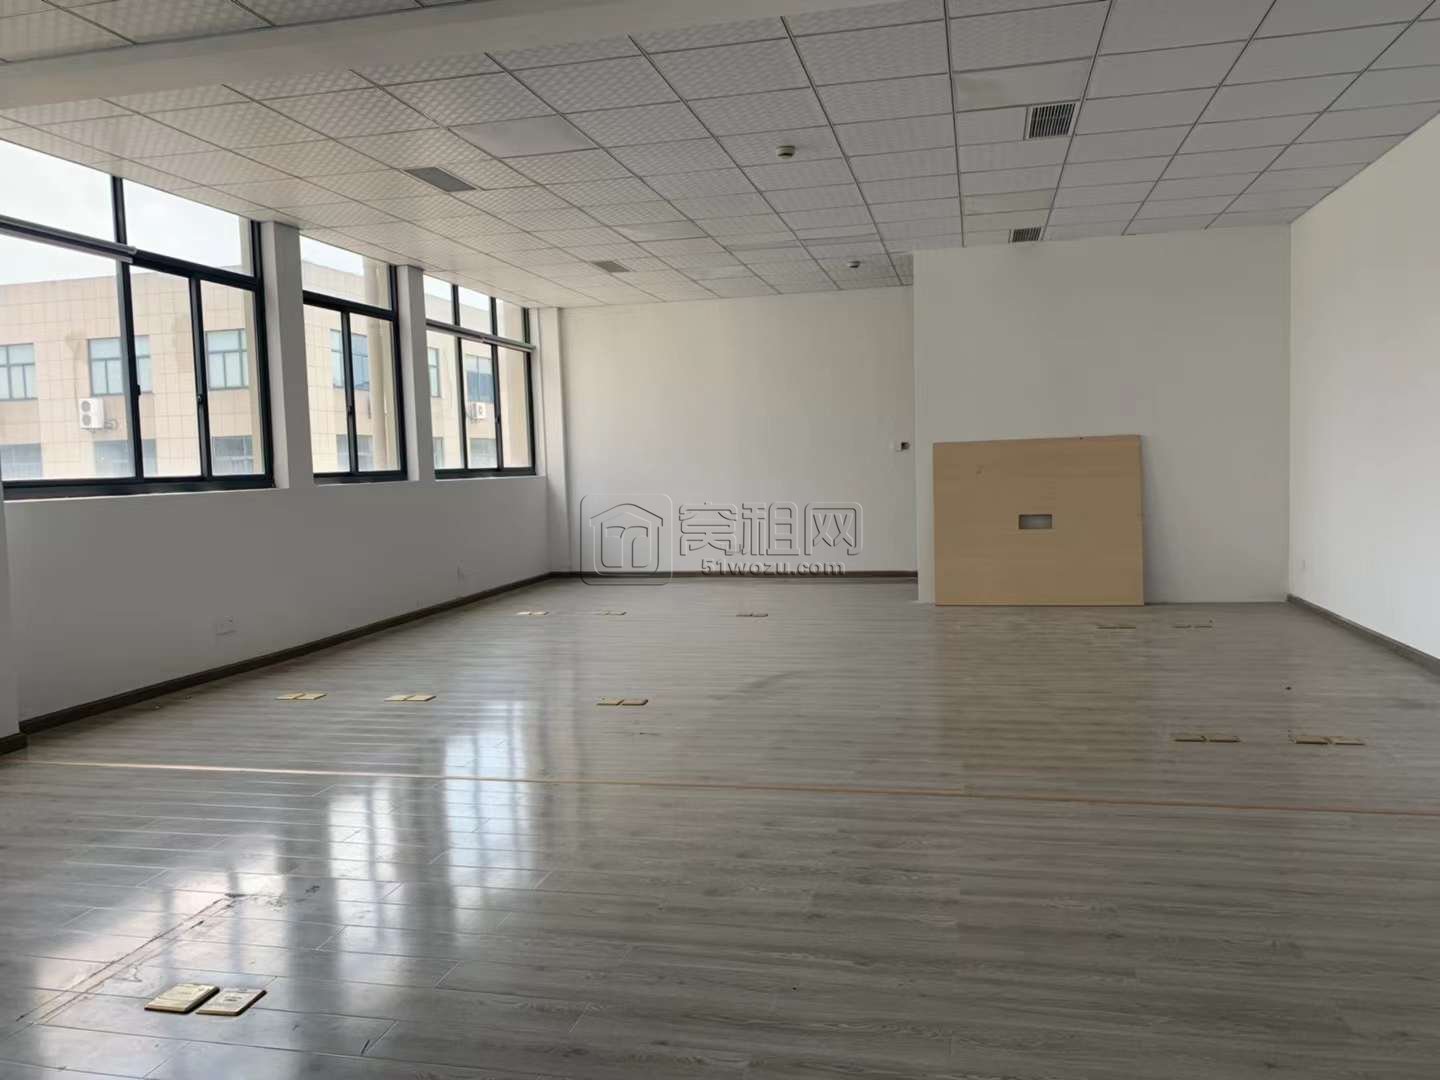 集士港恒宇创业园3楼160平米办公室出租1元/平米(图4)